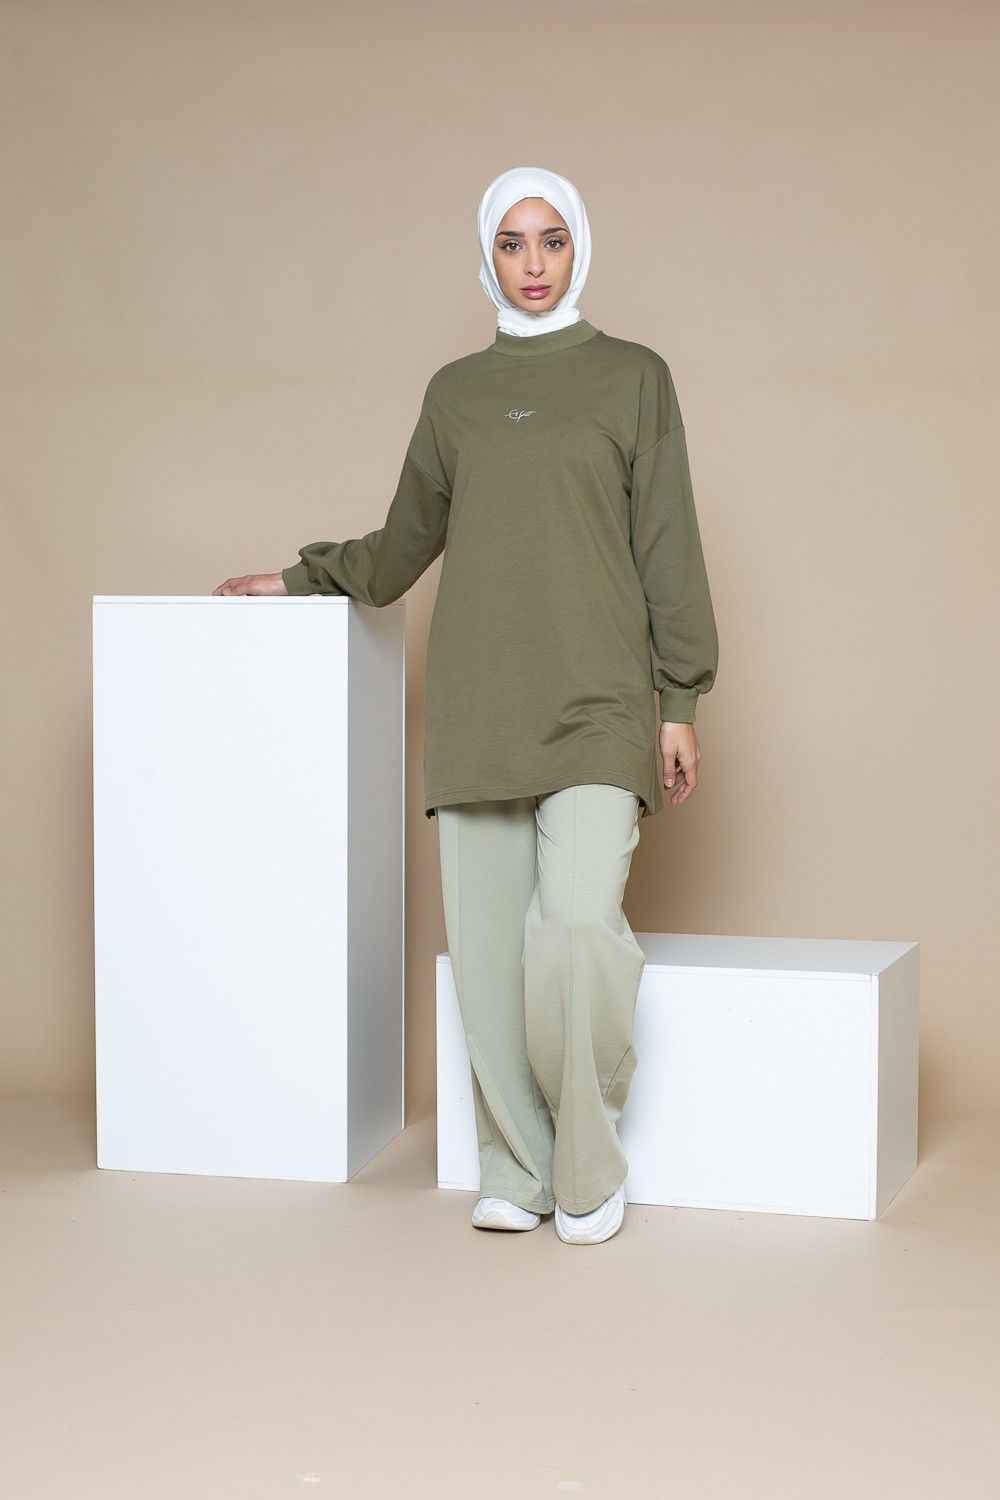 Haut ample printemps été pour femme musulmane. Marque Française sportswear moderne. Boutique hijab.